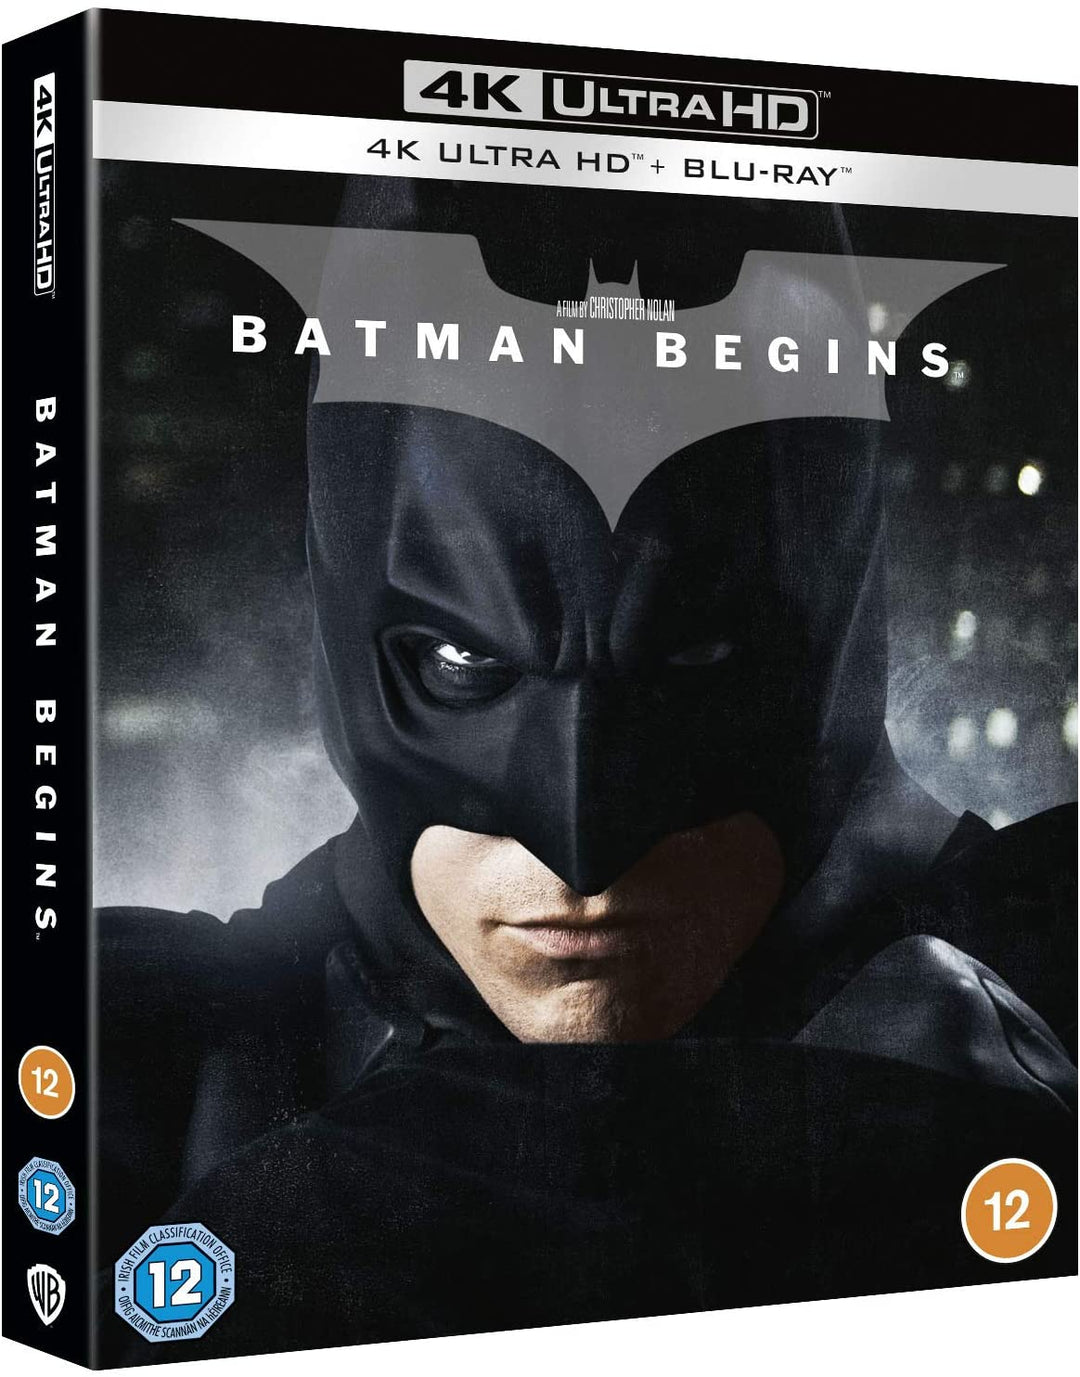 Batman Begins [2005] [Region Free] - Action/Fantasy [Blu-ray]